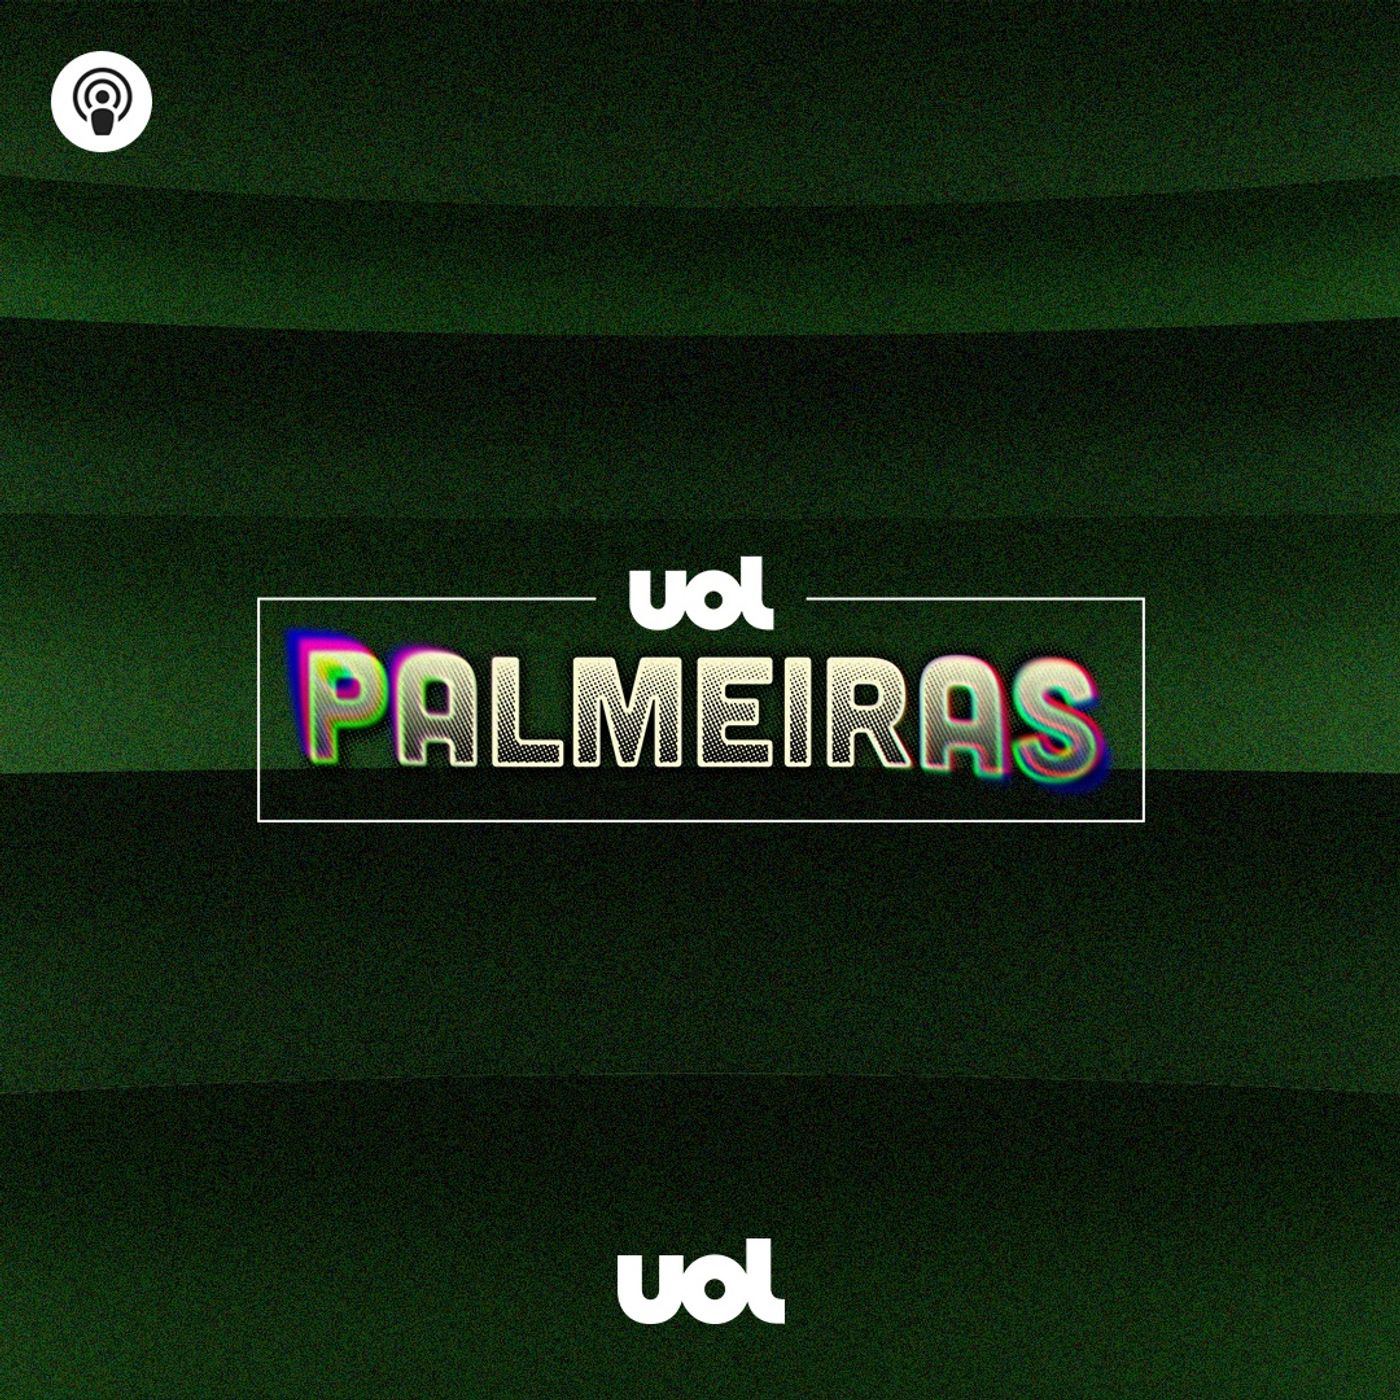 #108: Defesa vai mal e Palmeiras perde para Athletico na semi da Libertadores